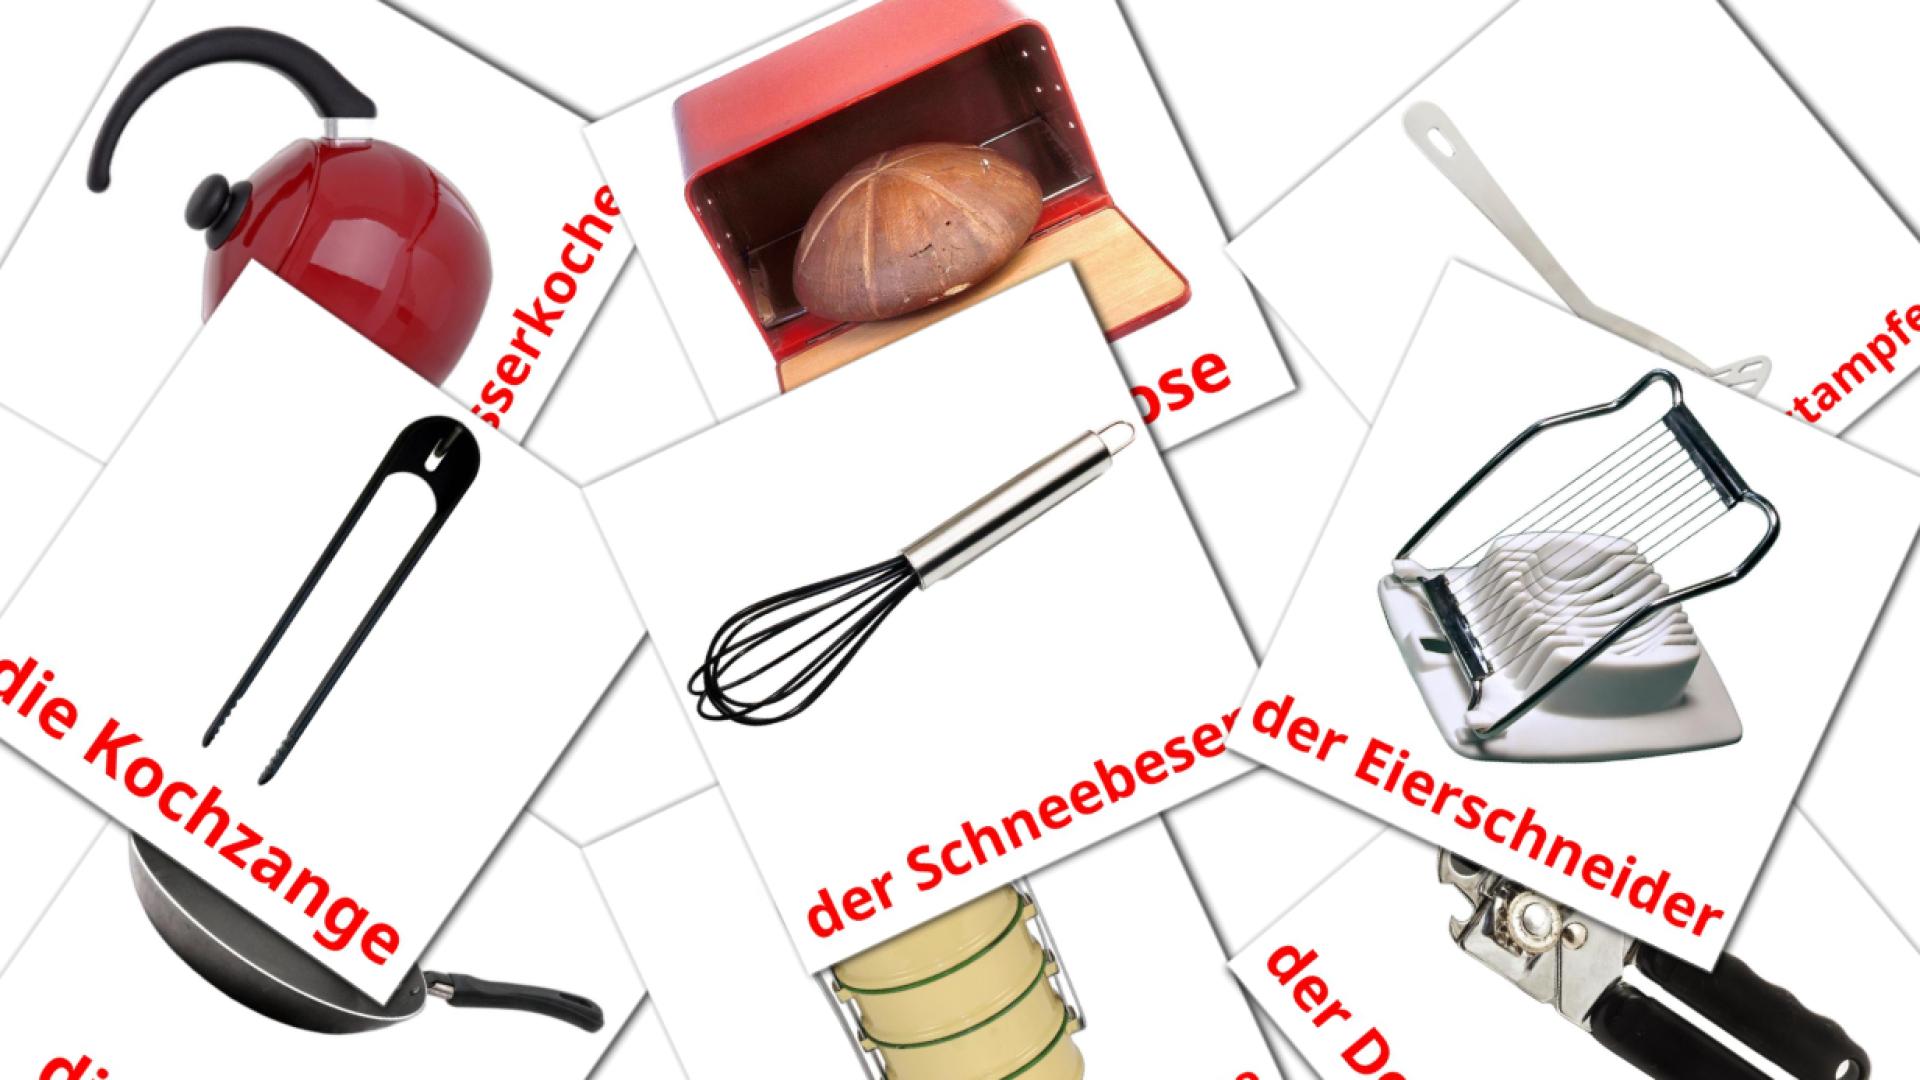 Ustensiles de cuisine - cartes de vocabulaire allemand